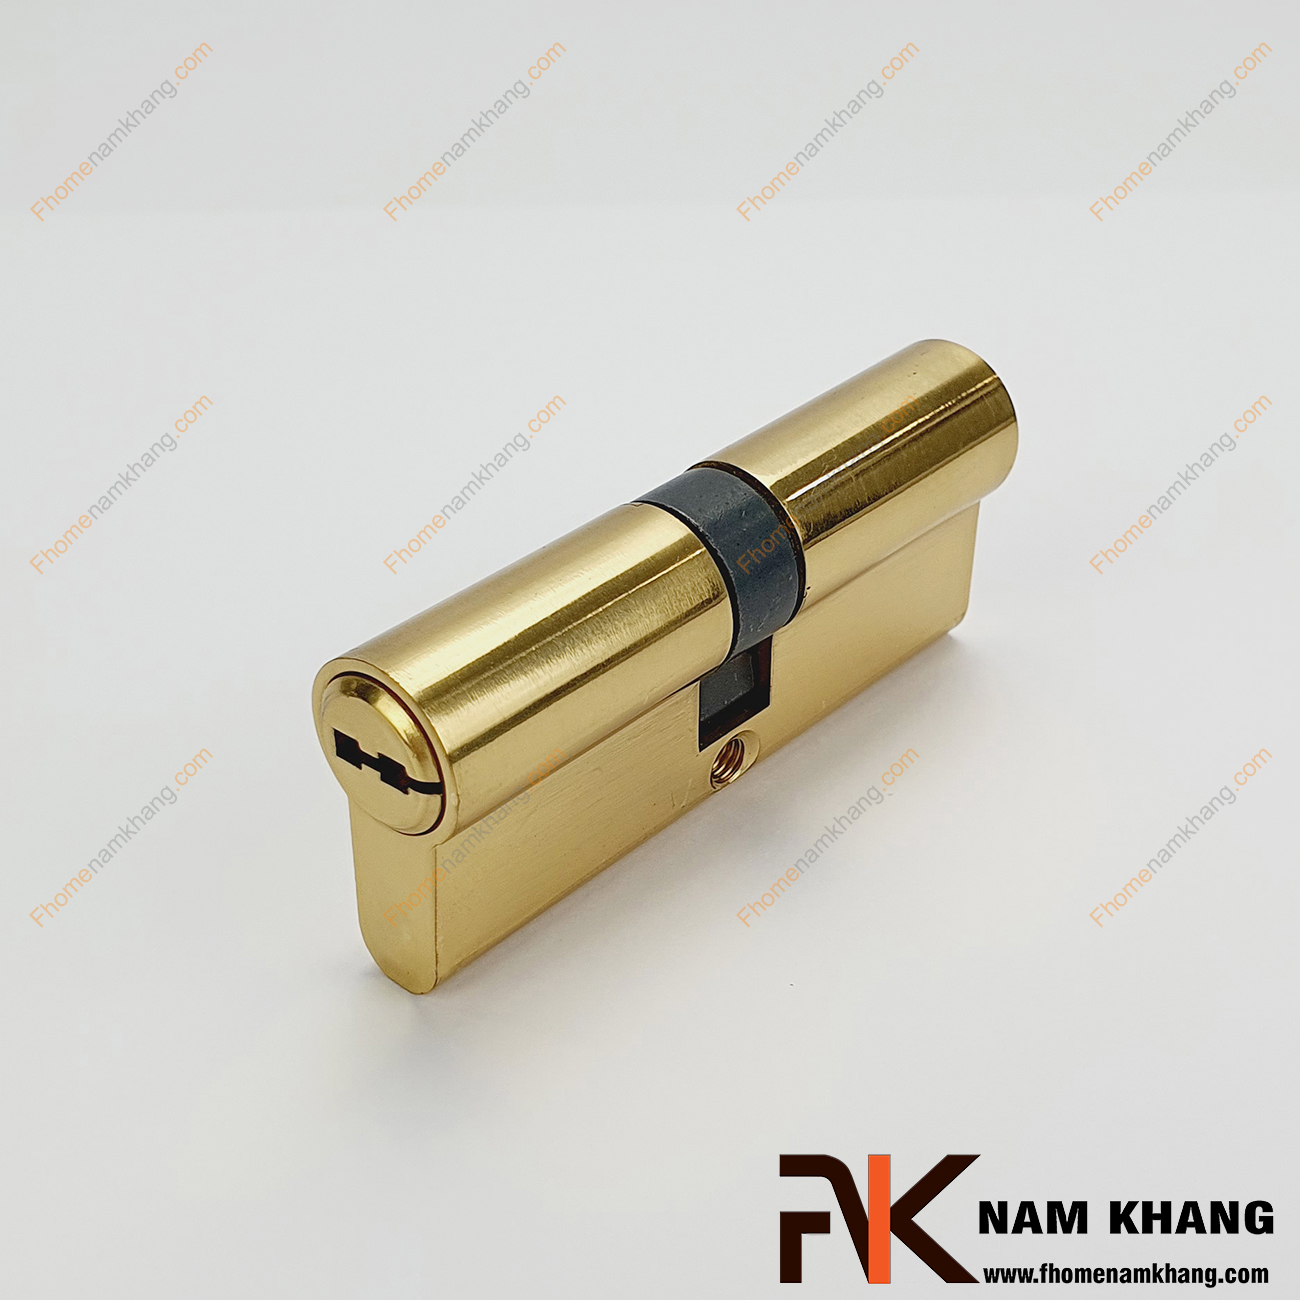 Củ khóa cửa chính NK261CC-7DV là loại linh kiện cao cấp dùng để thay thế vào các bộ khóa cửa hoặc lắp đặt mới cho bộ khóa cửa.